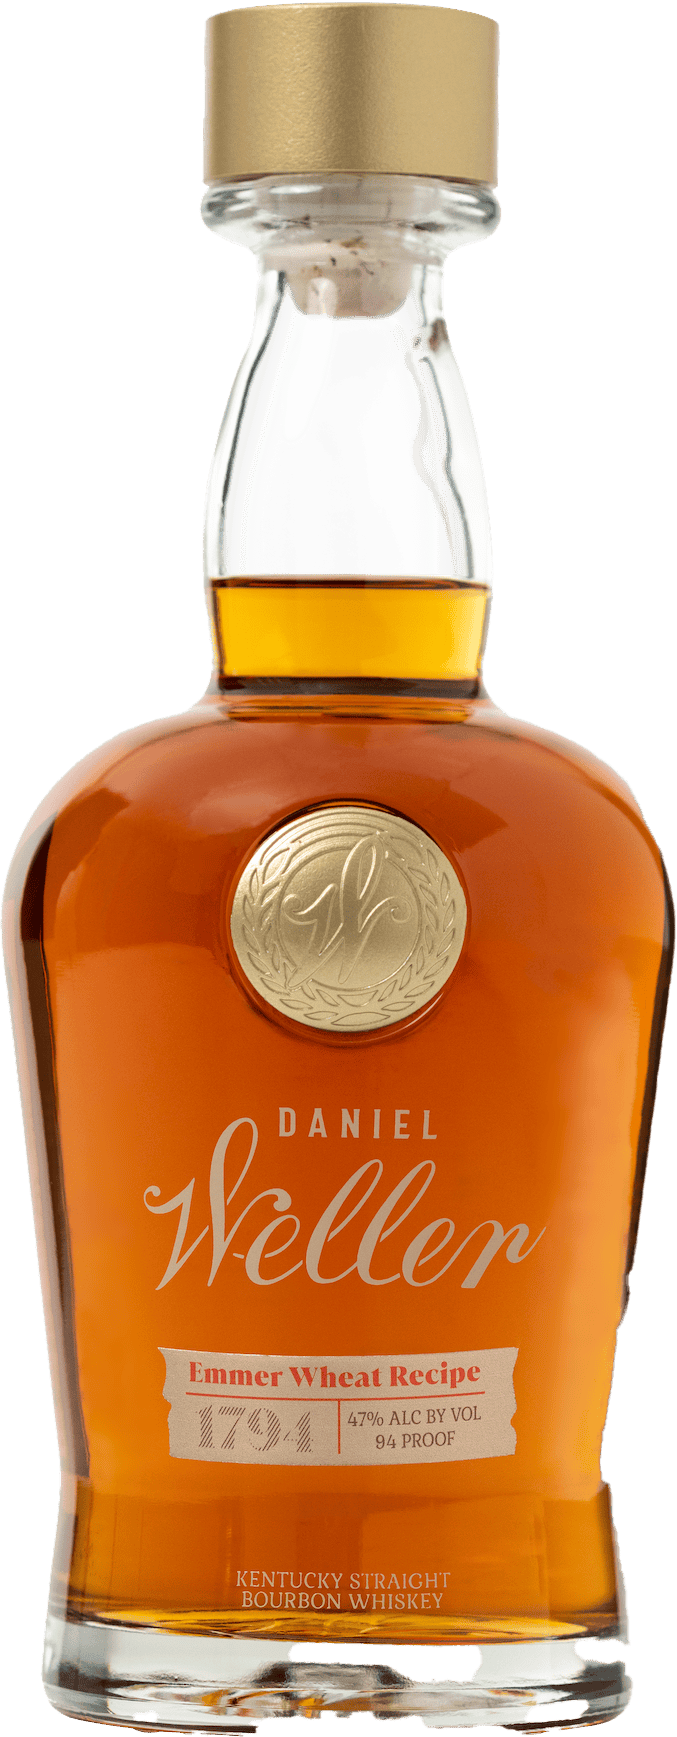 Daniel Weller 1794 Emmer Wheat Recipe Kentucky Straight Bourbon Whiskey 750ml